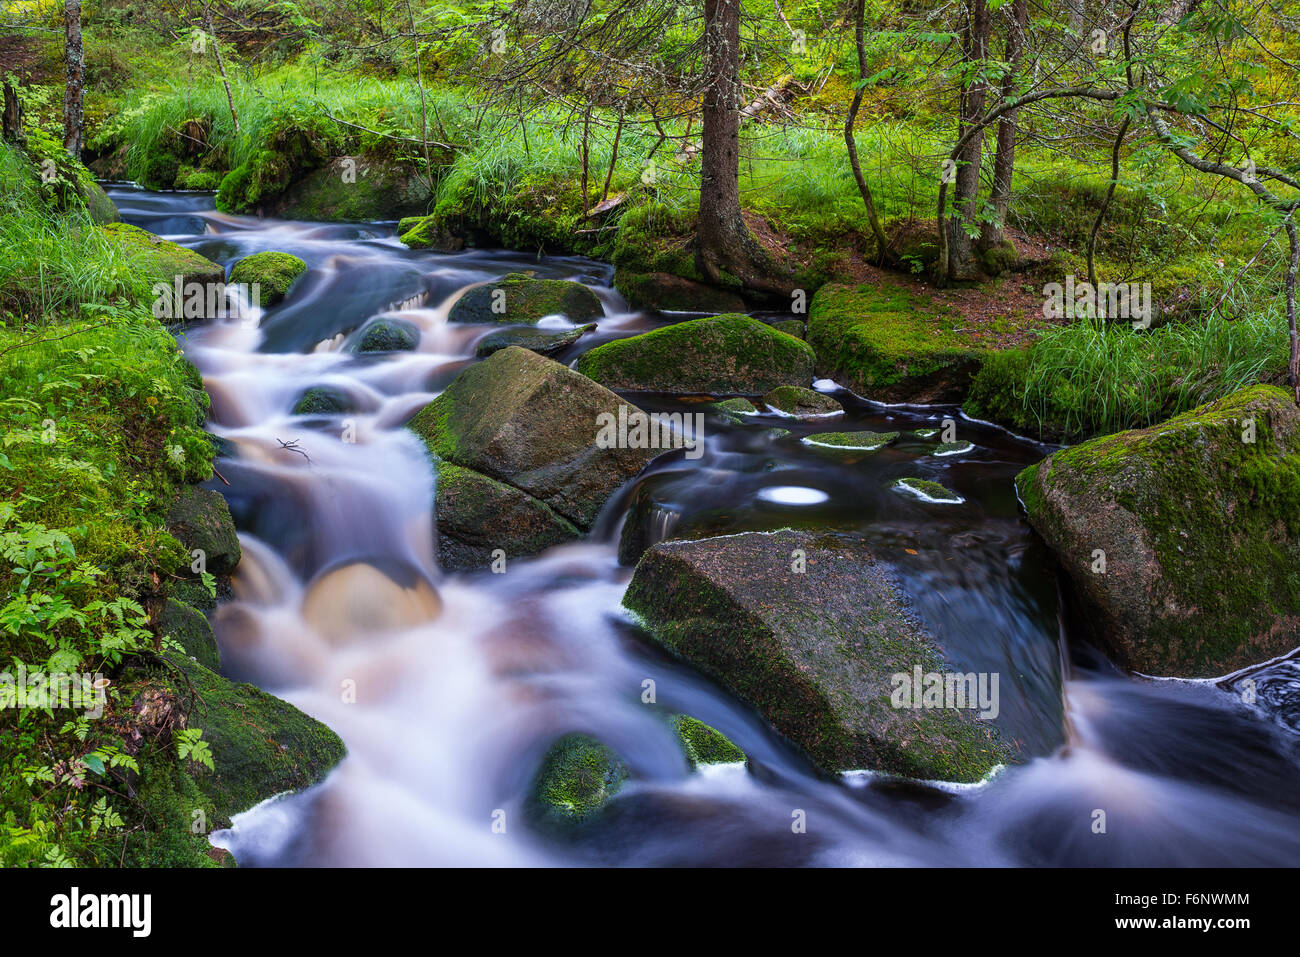 Wild little stream in summer forest Stock Photo